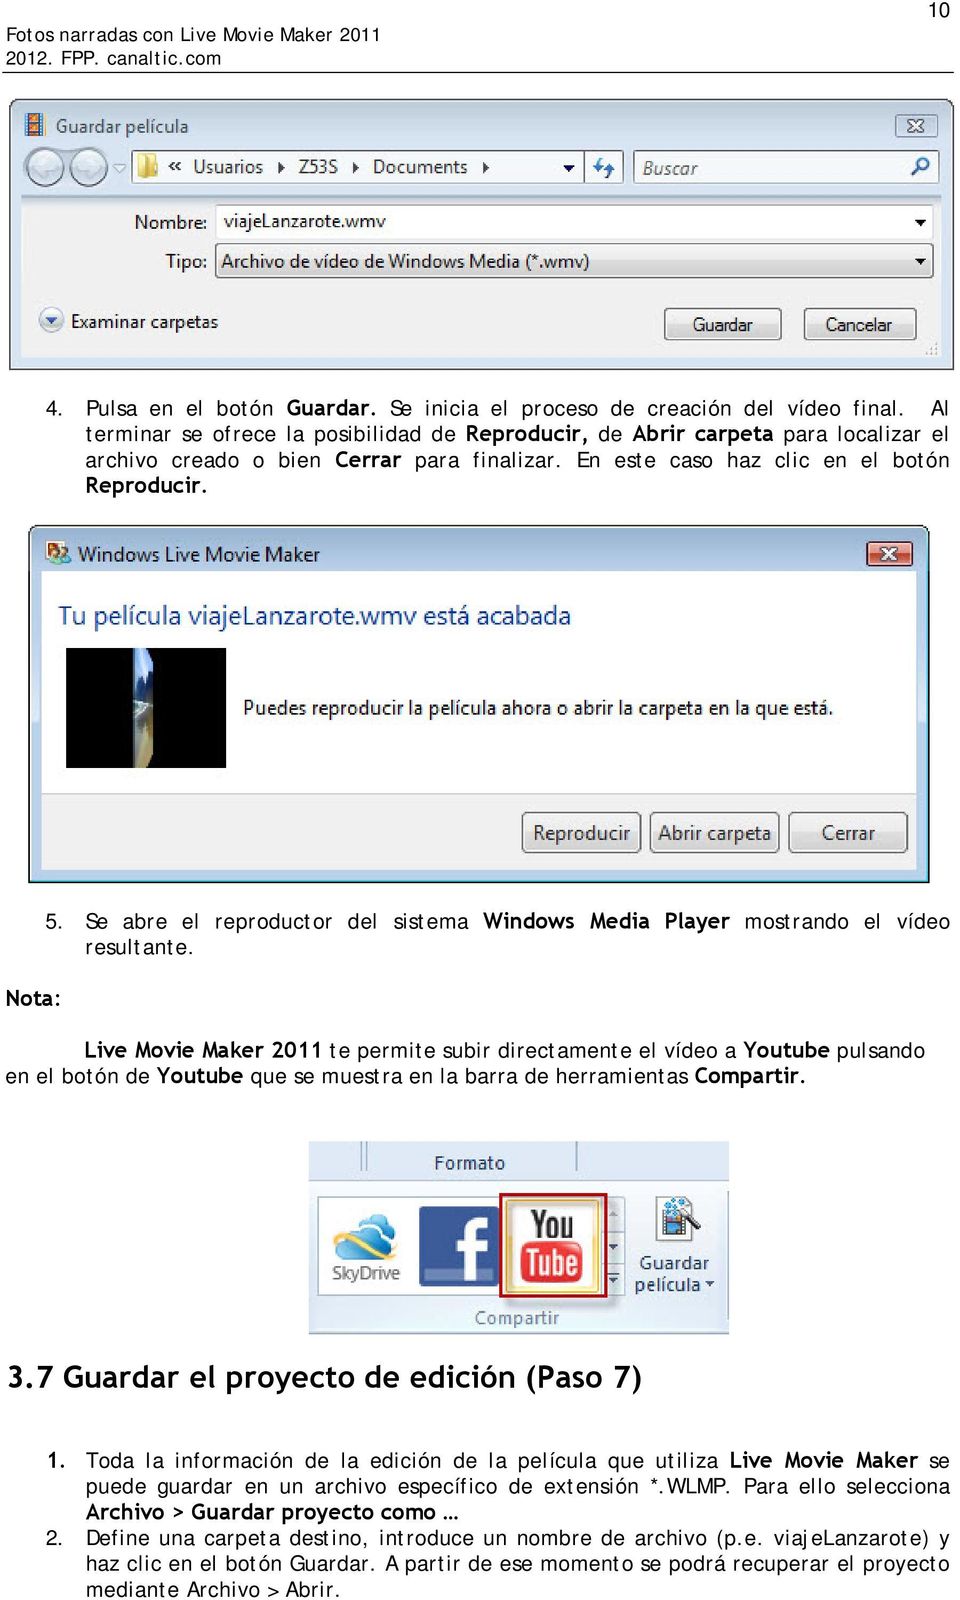 Se abre el reproductor del sistema Windows Media Player mostrando el vídeo resultante.